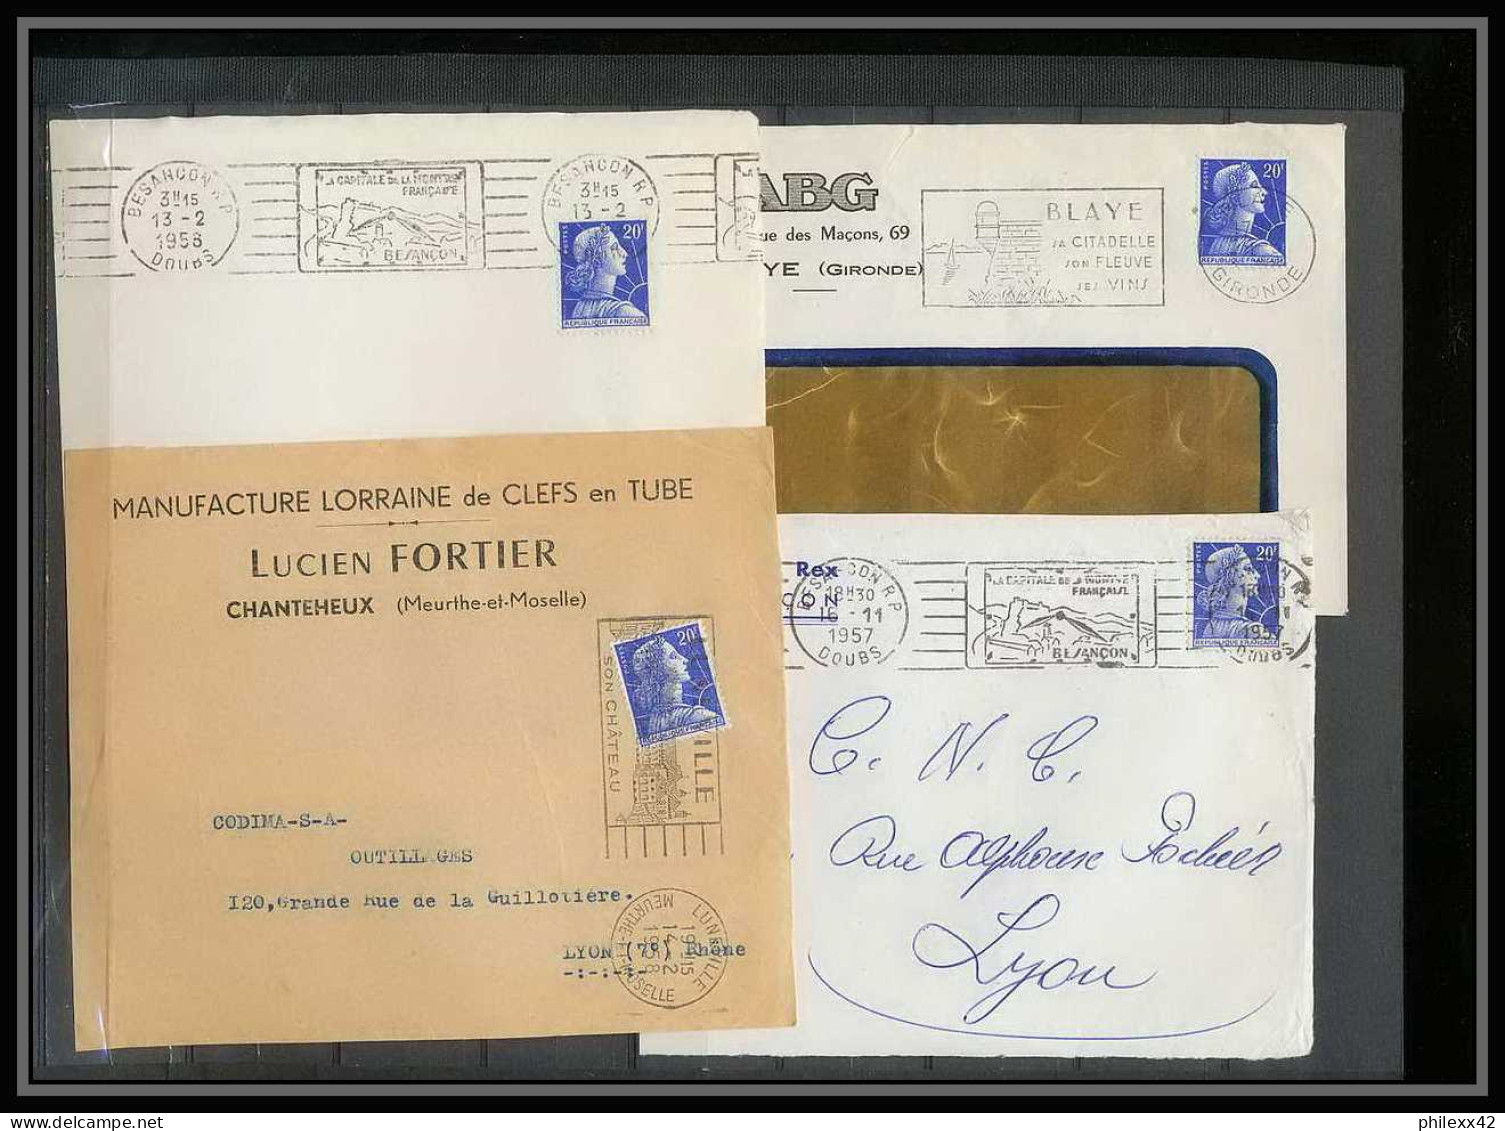 13064 Lot de 65 lettres N°1011 Marianne de Muller (lettre enveloppe courrier) Voir photos